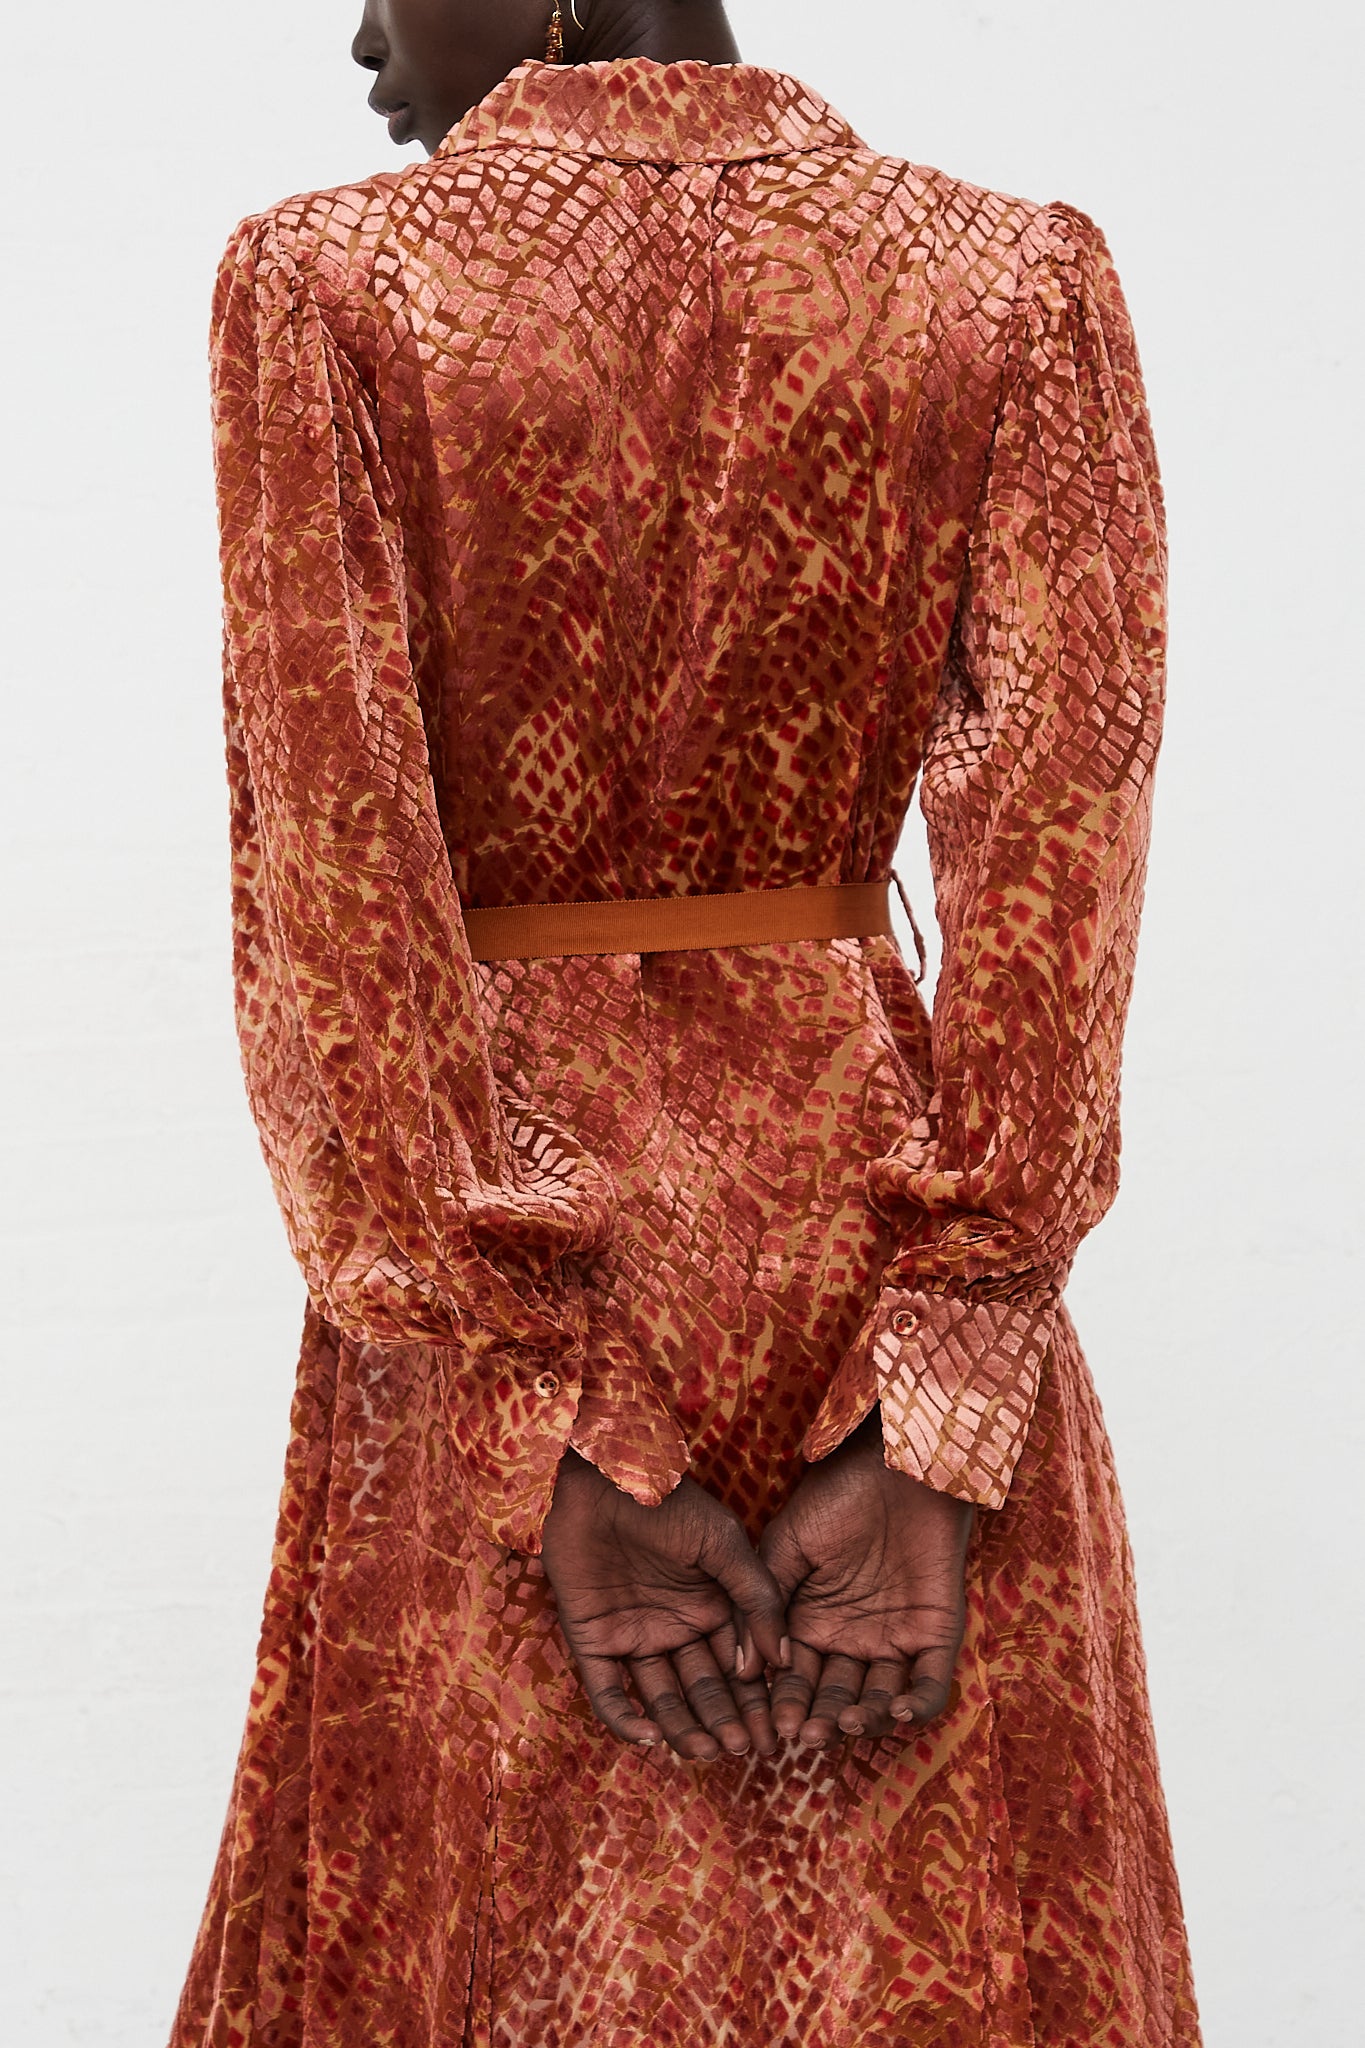 Thalia Velvet Dress in Sienna by Ulla Johnson for Oroboro Back